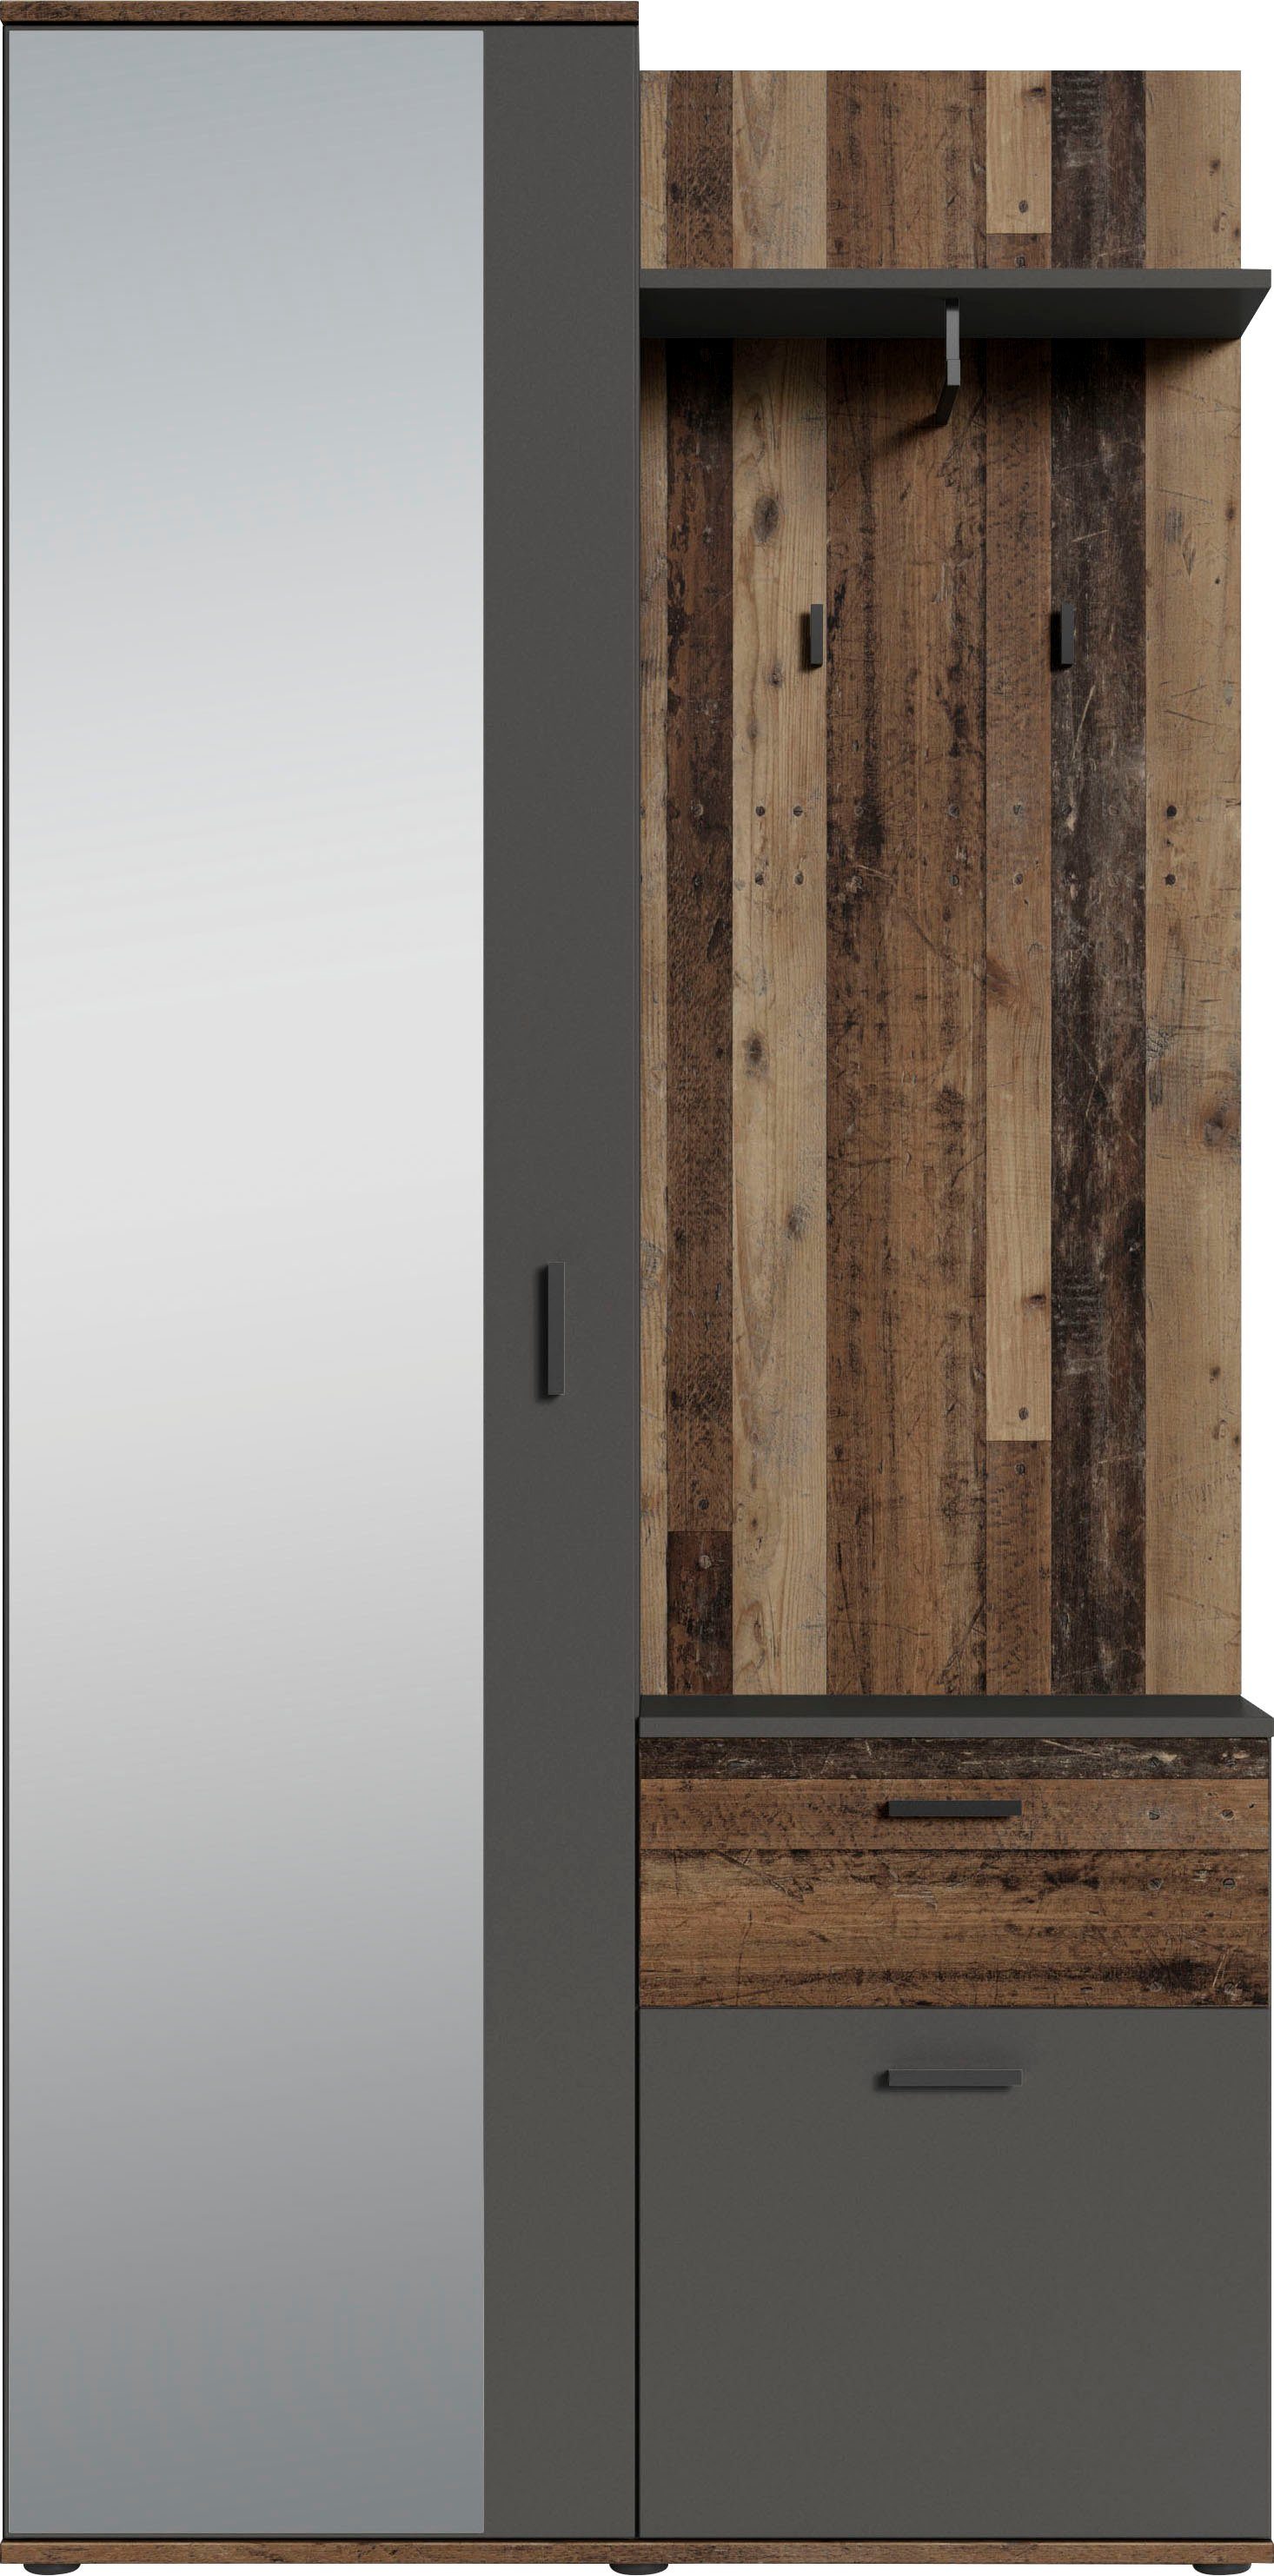 Spiegel Breite 97 cm mit Old Jakob Wood/Anthrazit Kompaktgarderobe byLIVING und Ablage, großem